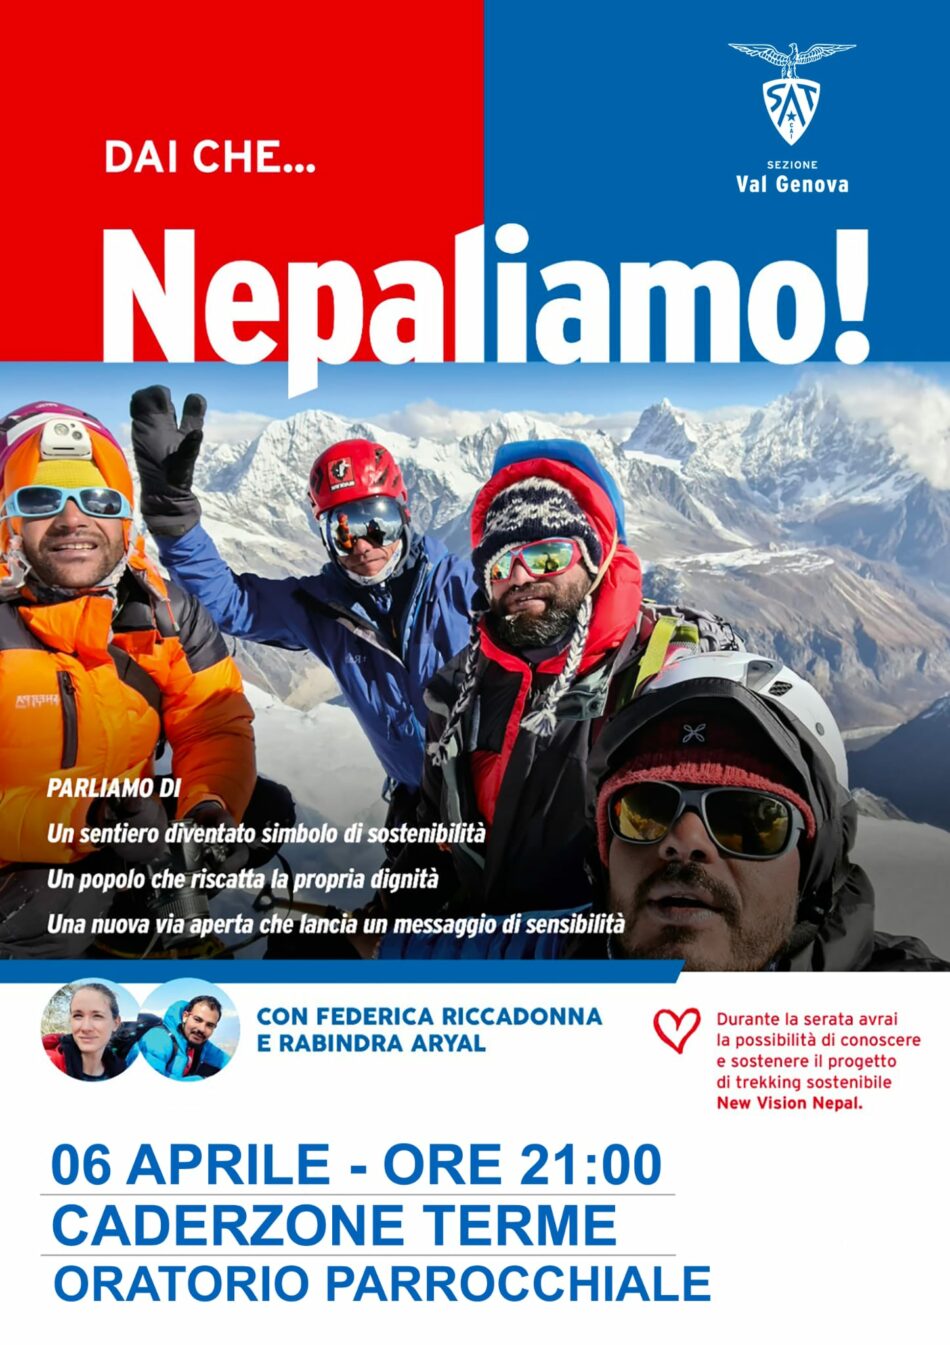 Caderzone Terme 6 aprile: dai che… Nepaliamo